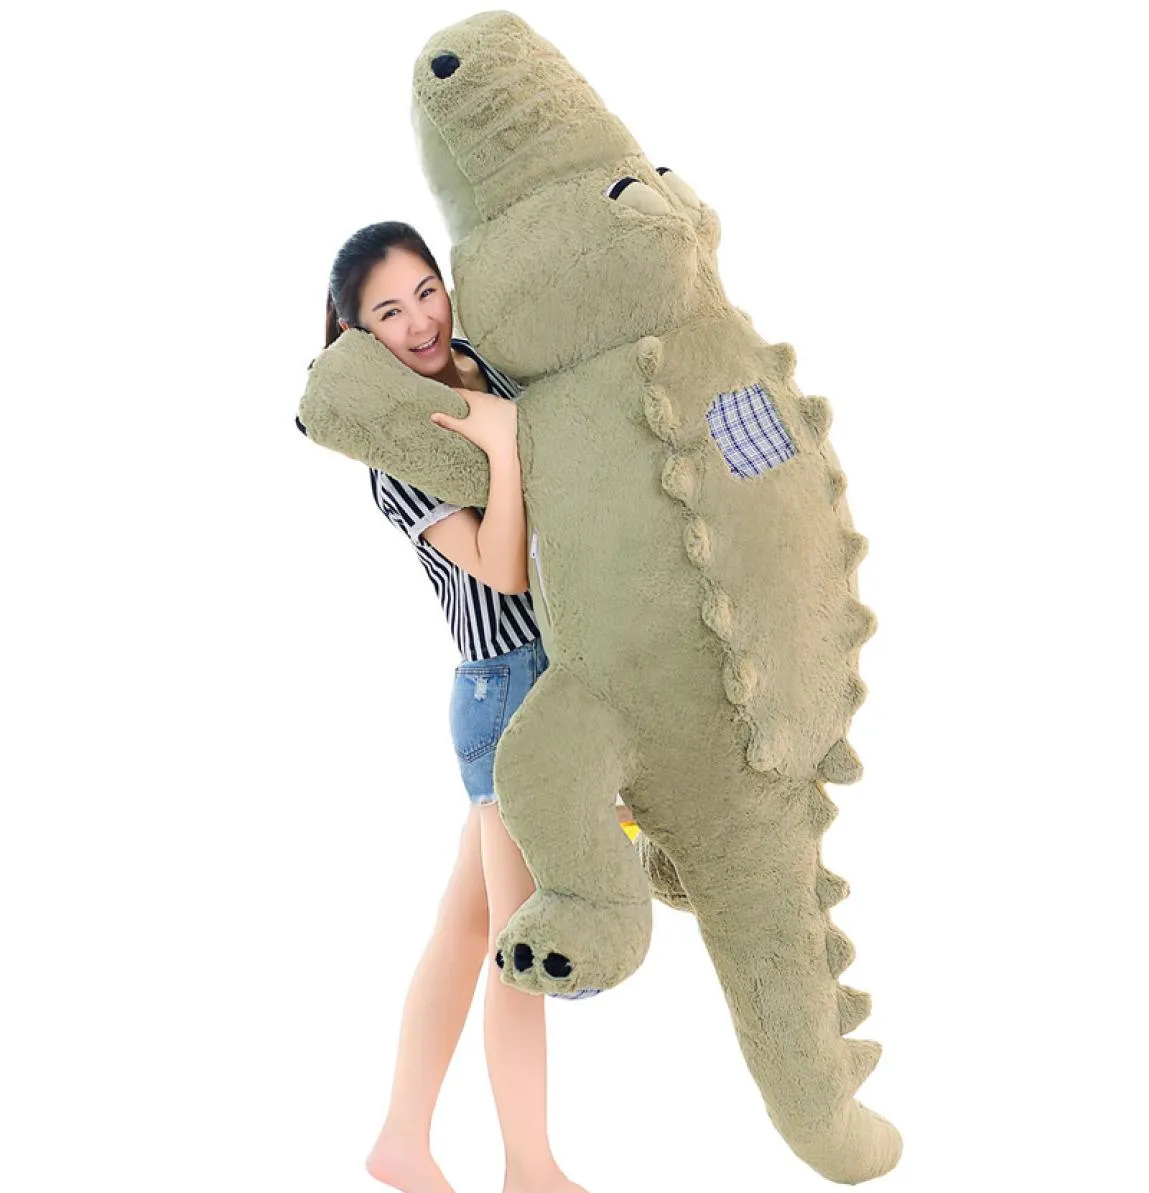 Dorimytrader Jumbo Weiche Tier Krokodil Plüsch Puppe Riesige Gefüllte Cartoon Alligator Spielzeug für Kinder Geschenk 4 Farben 180 cm 215 cm DY5532590